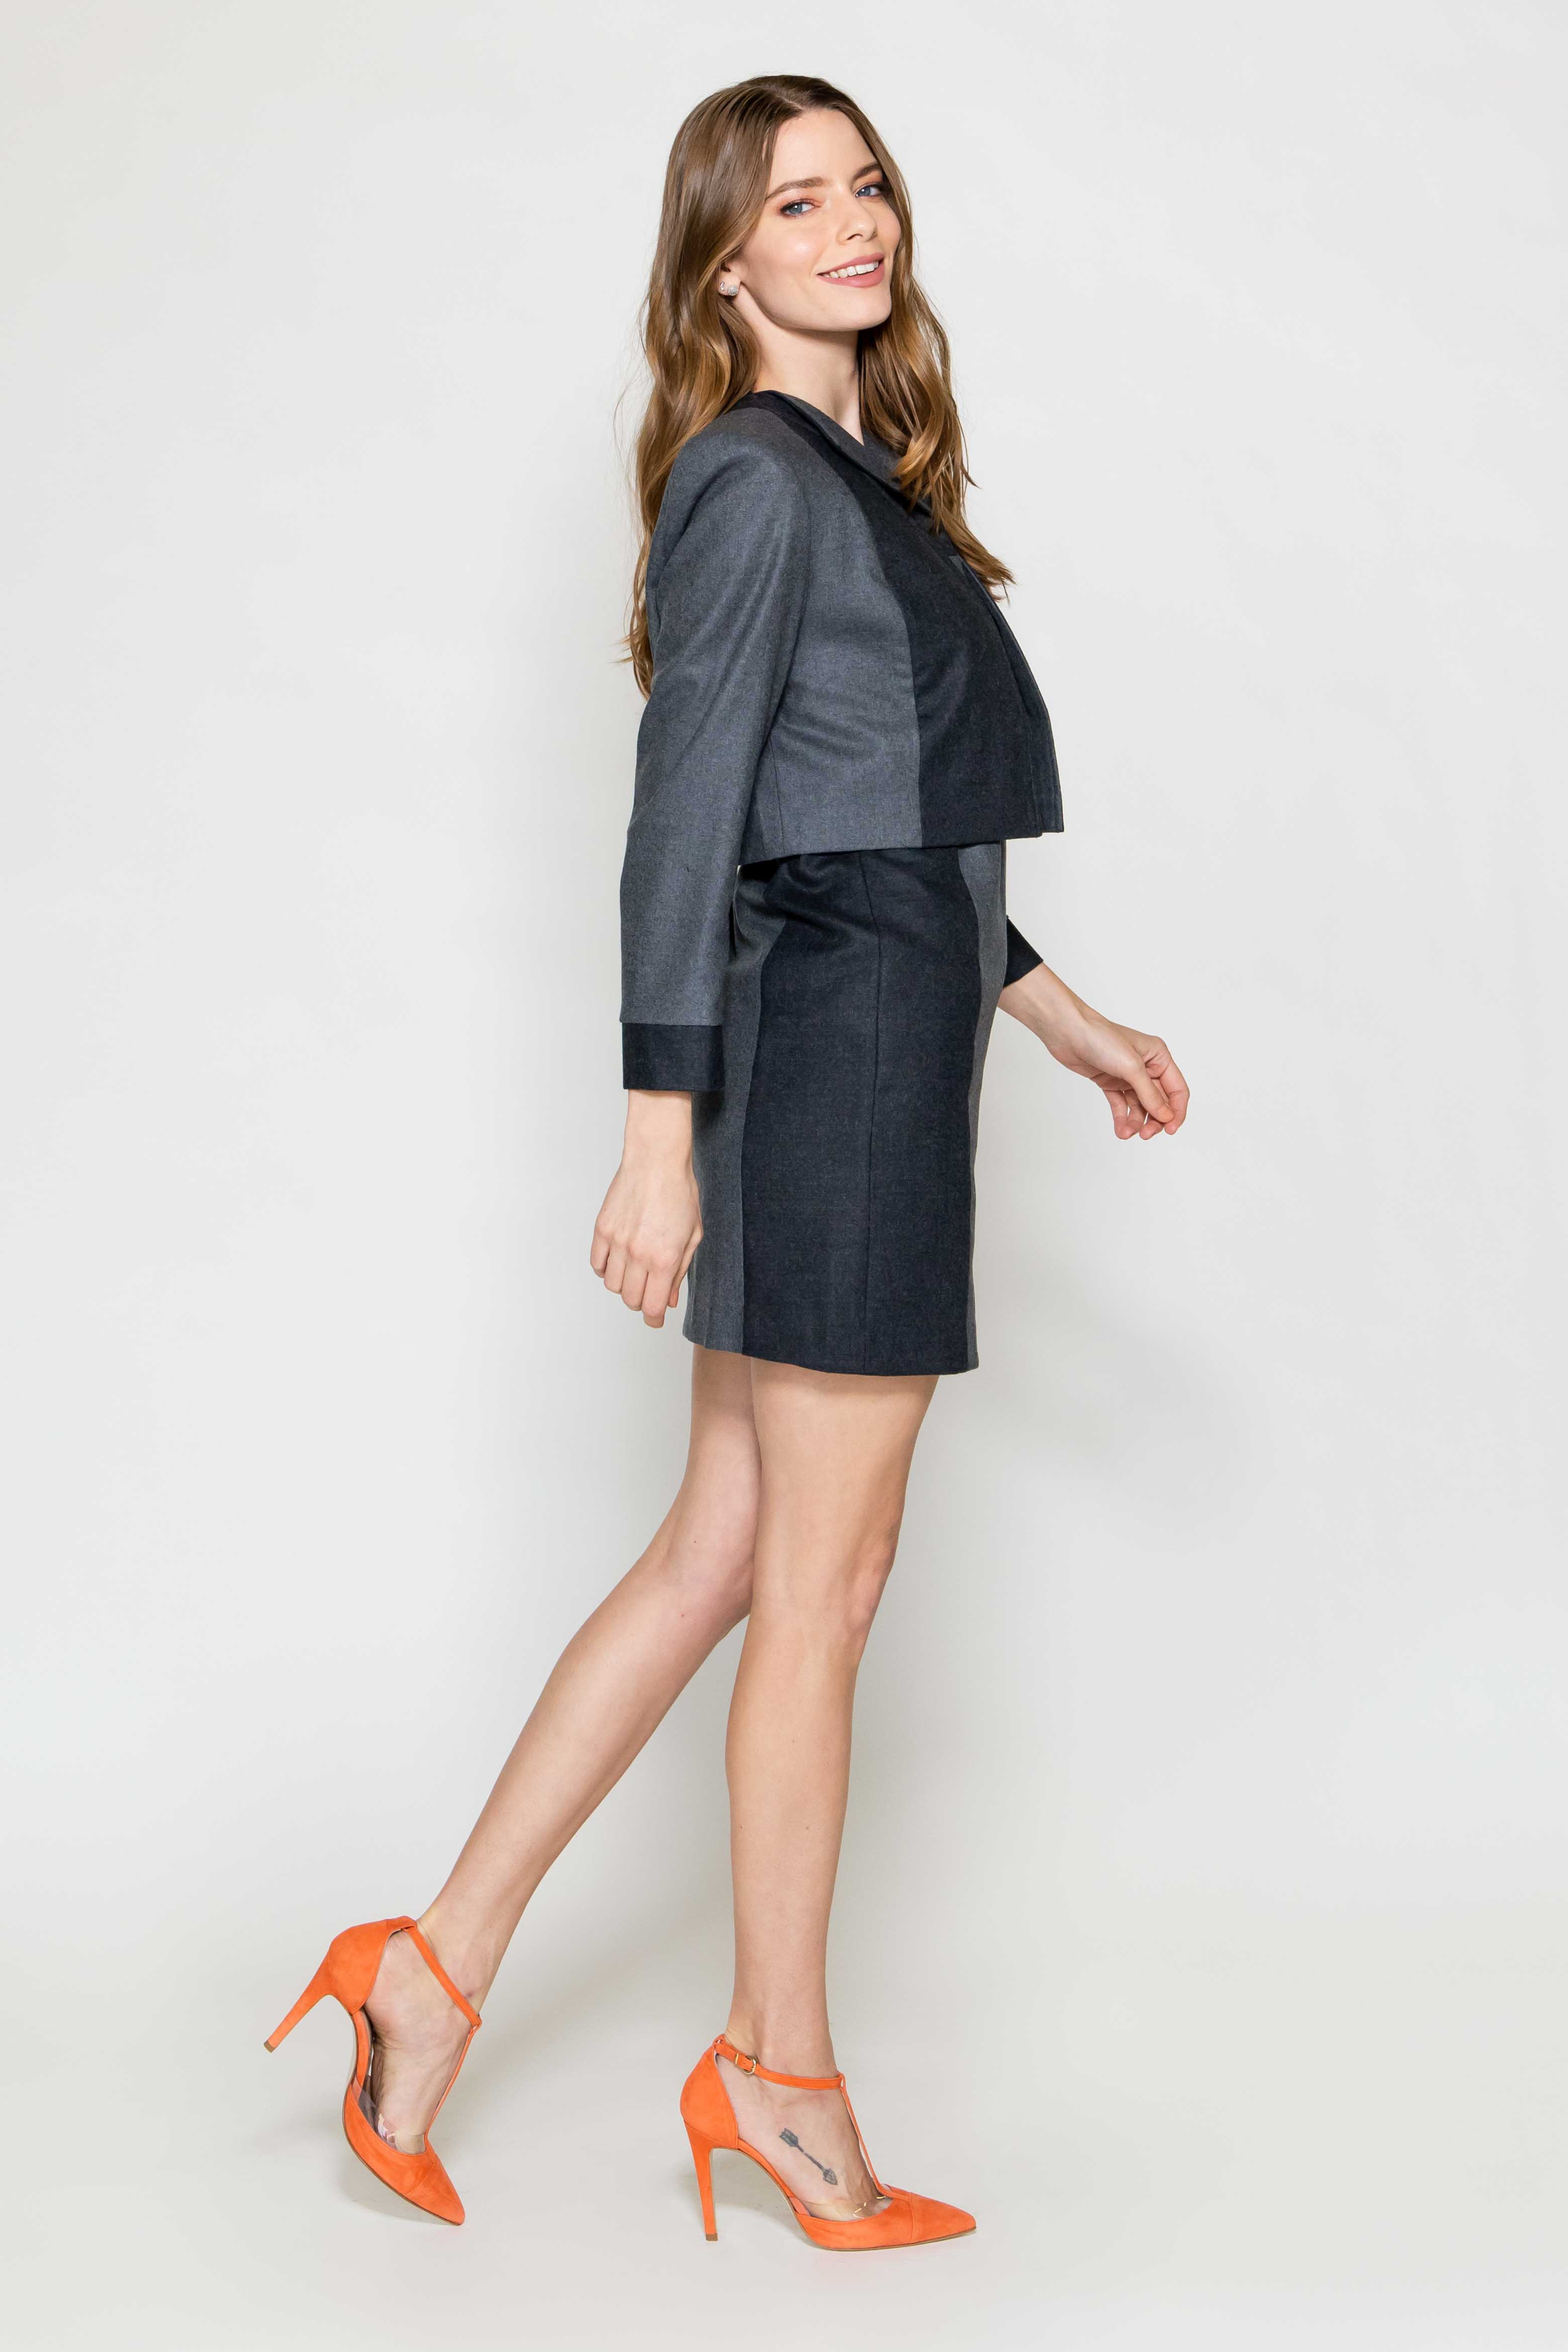 Sara Sabella 2-PIECE SET Pantheon Grey Wool Dress & Jacket Set